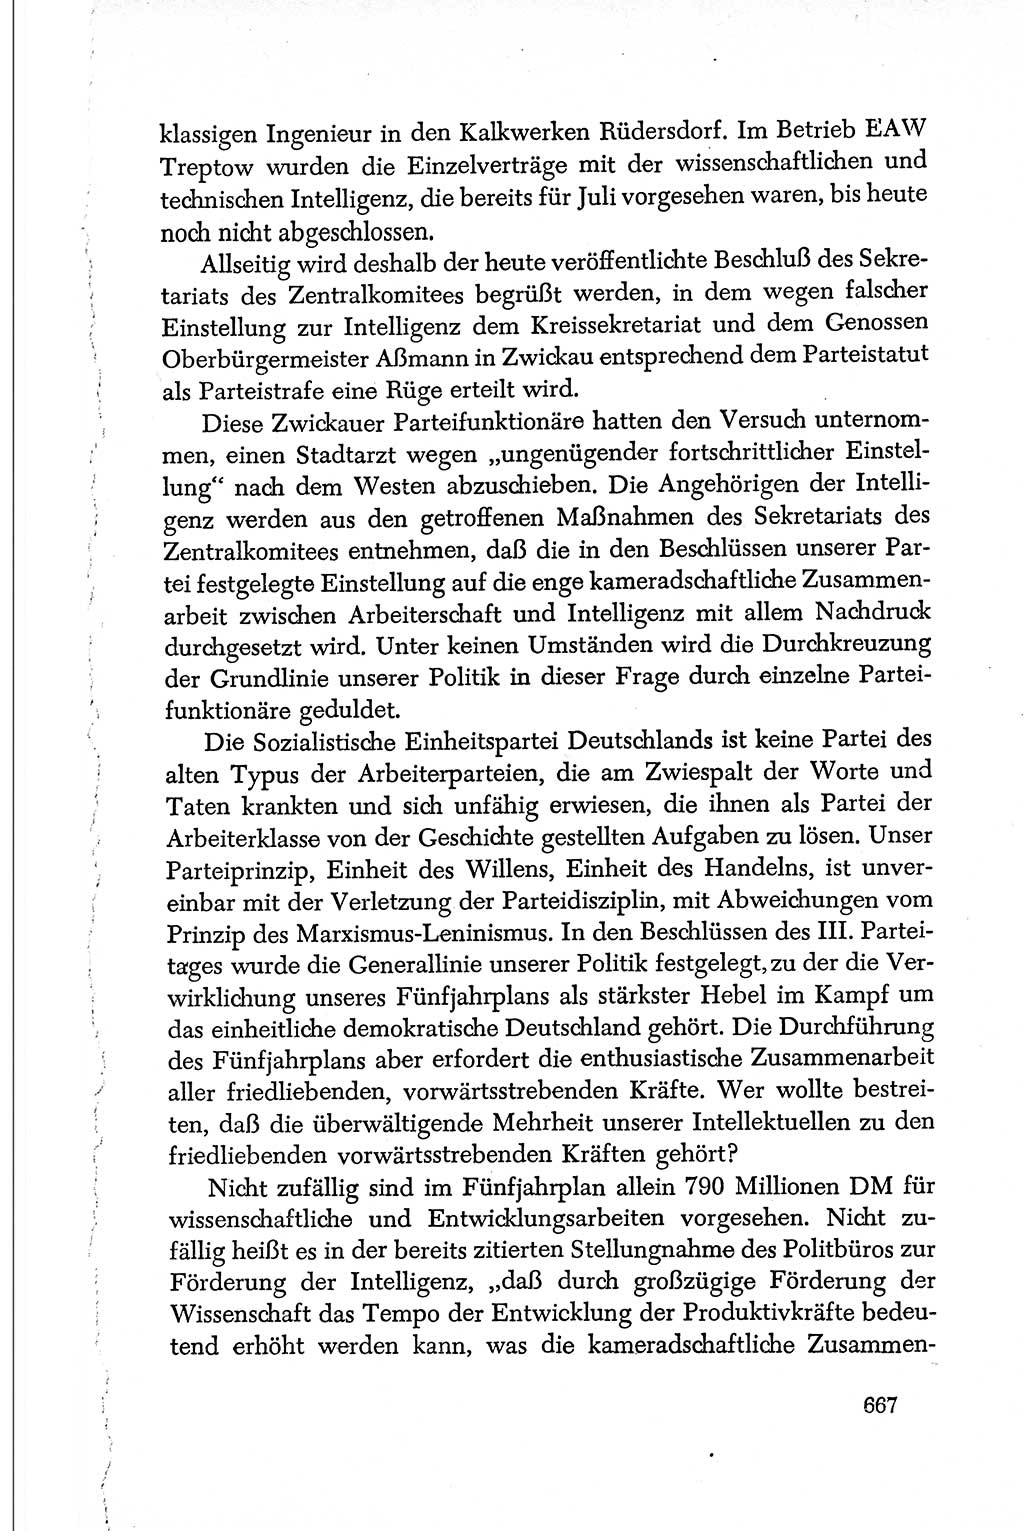 Dokumente der Sozialistischen Einheitspartei Deutschlands (SED) [Deutsche Demokratische Republik (DDR)] 1950-1952, Seite 667 (Dok. SED DDR 1950-1952, S. 667)